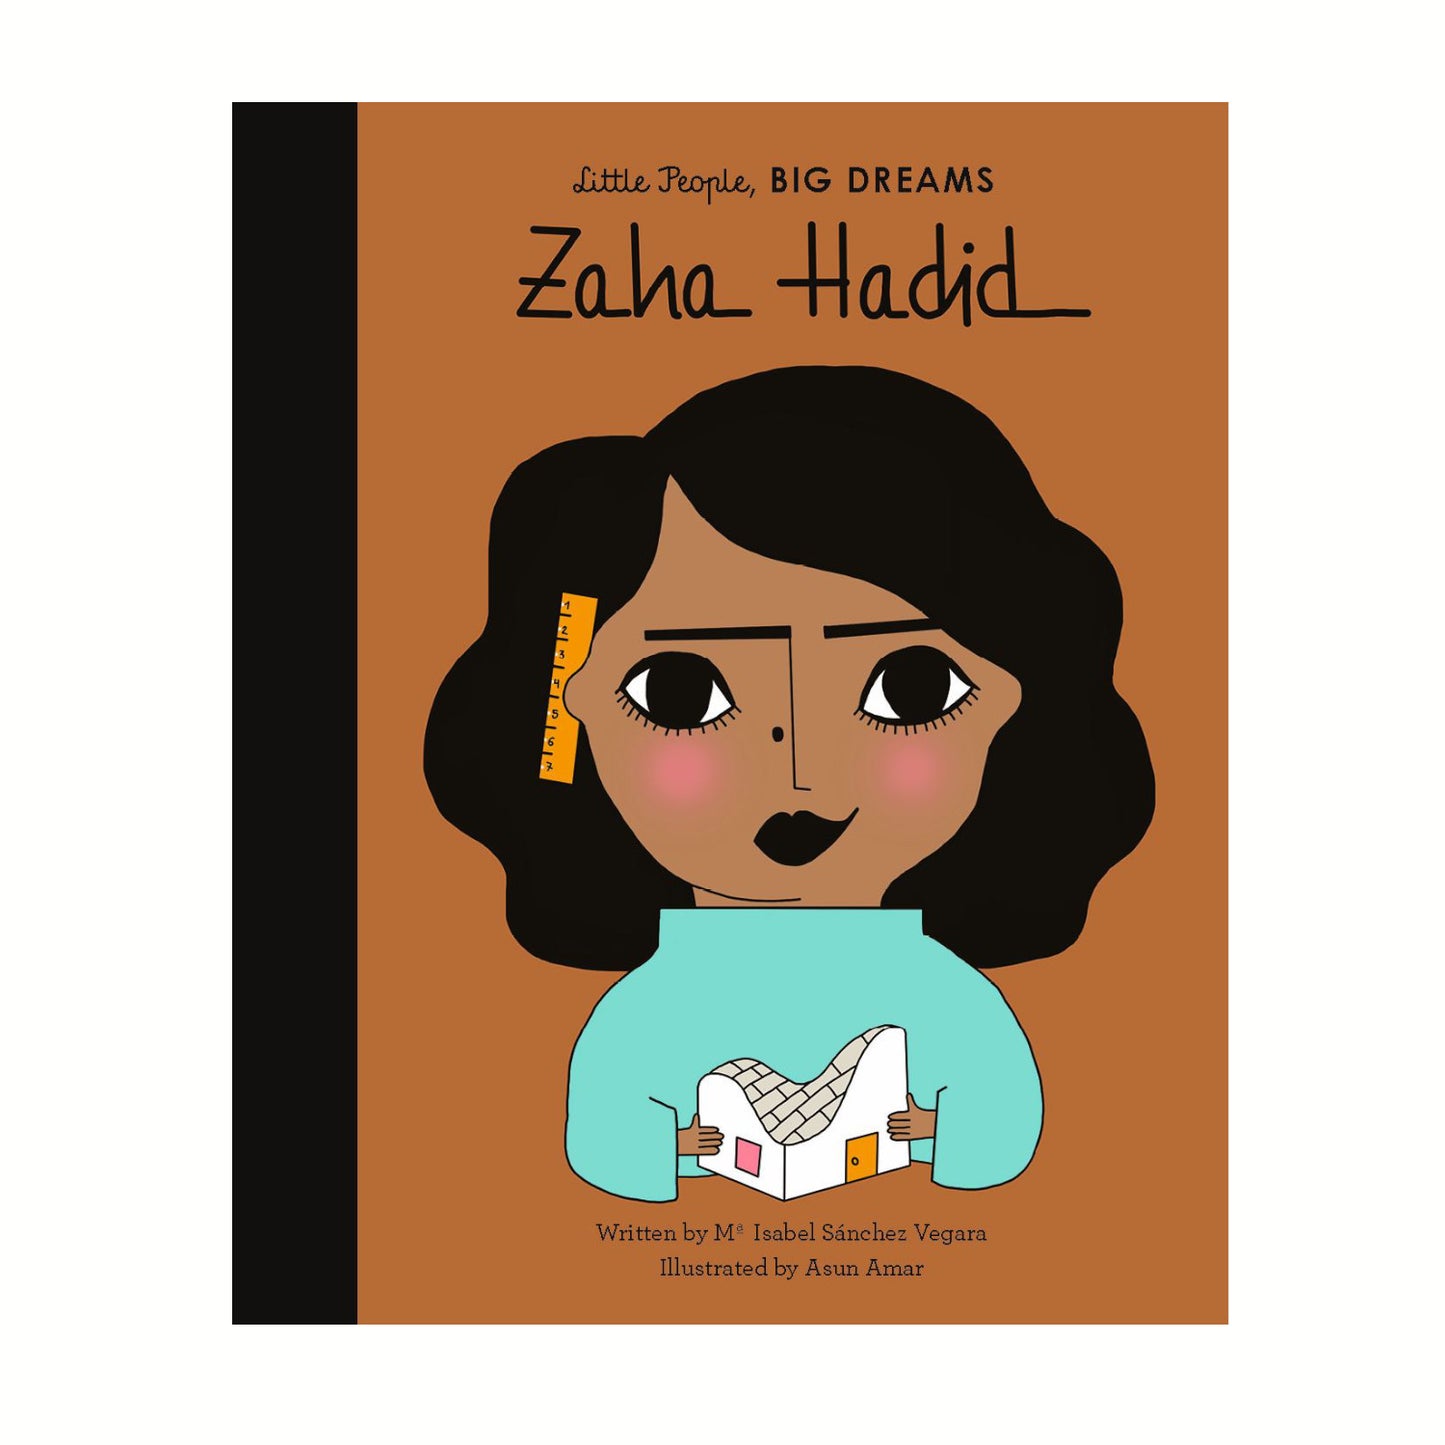 Little People Big Dreams: Zaha Hadid